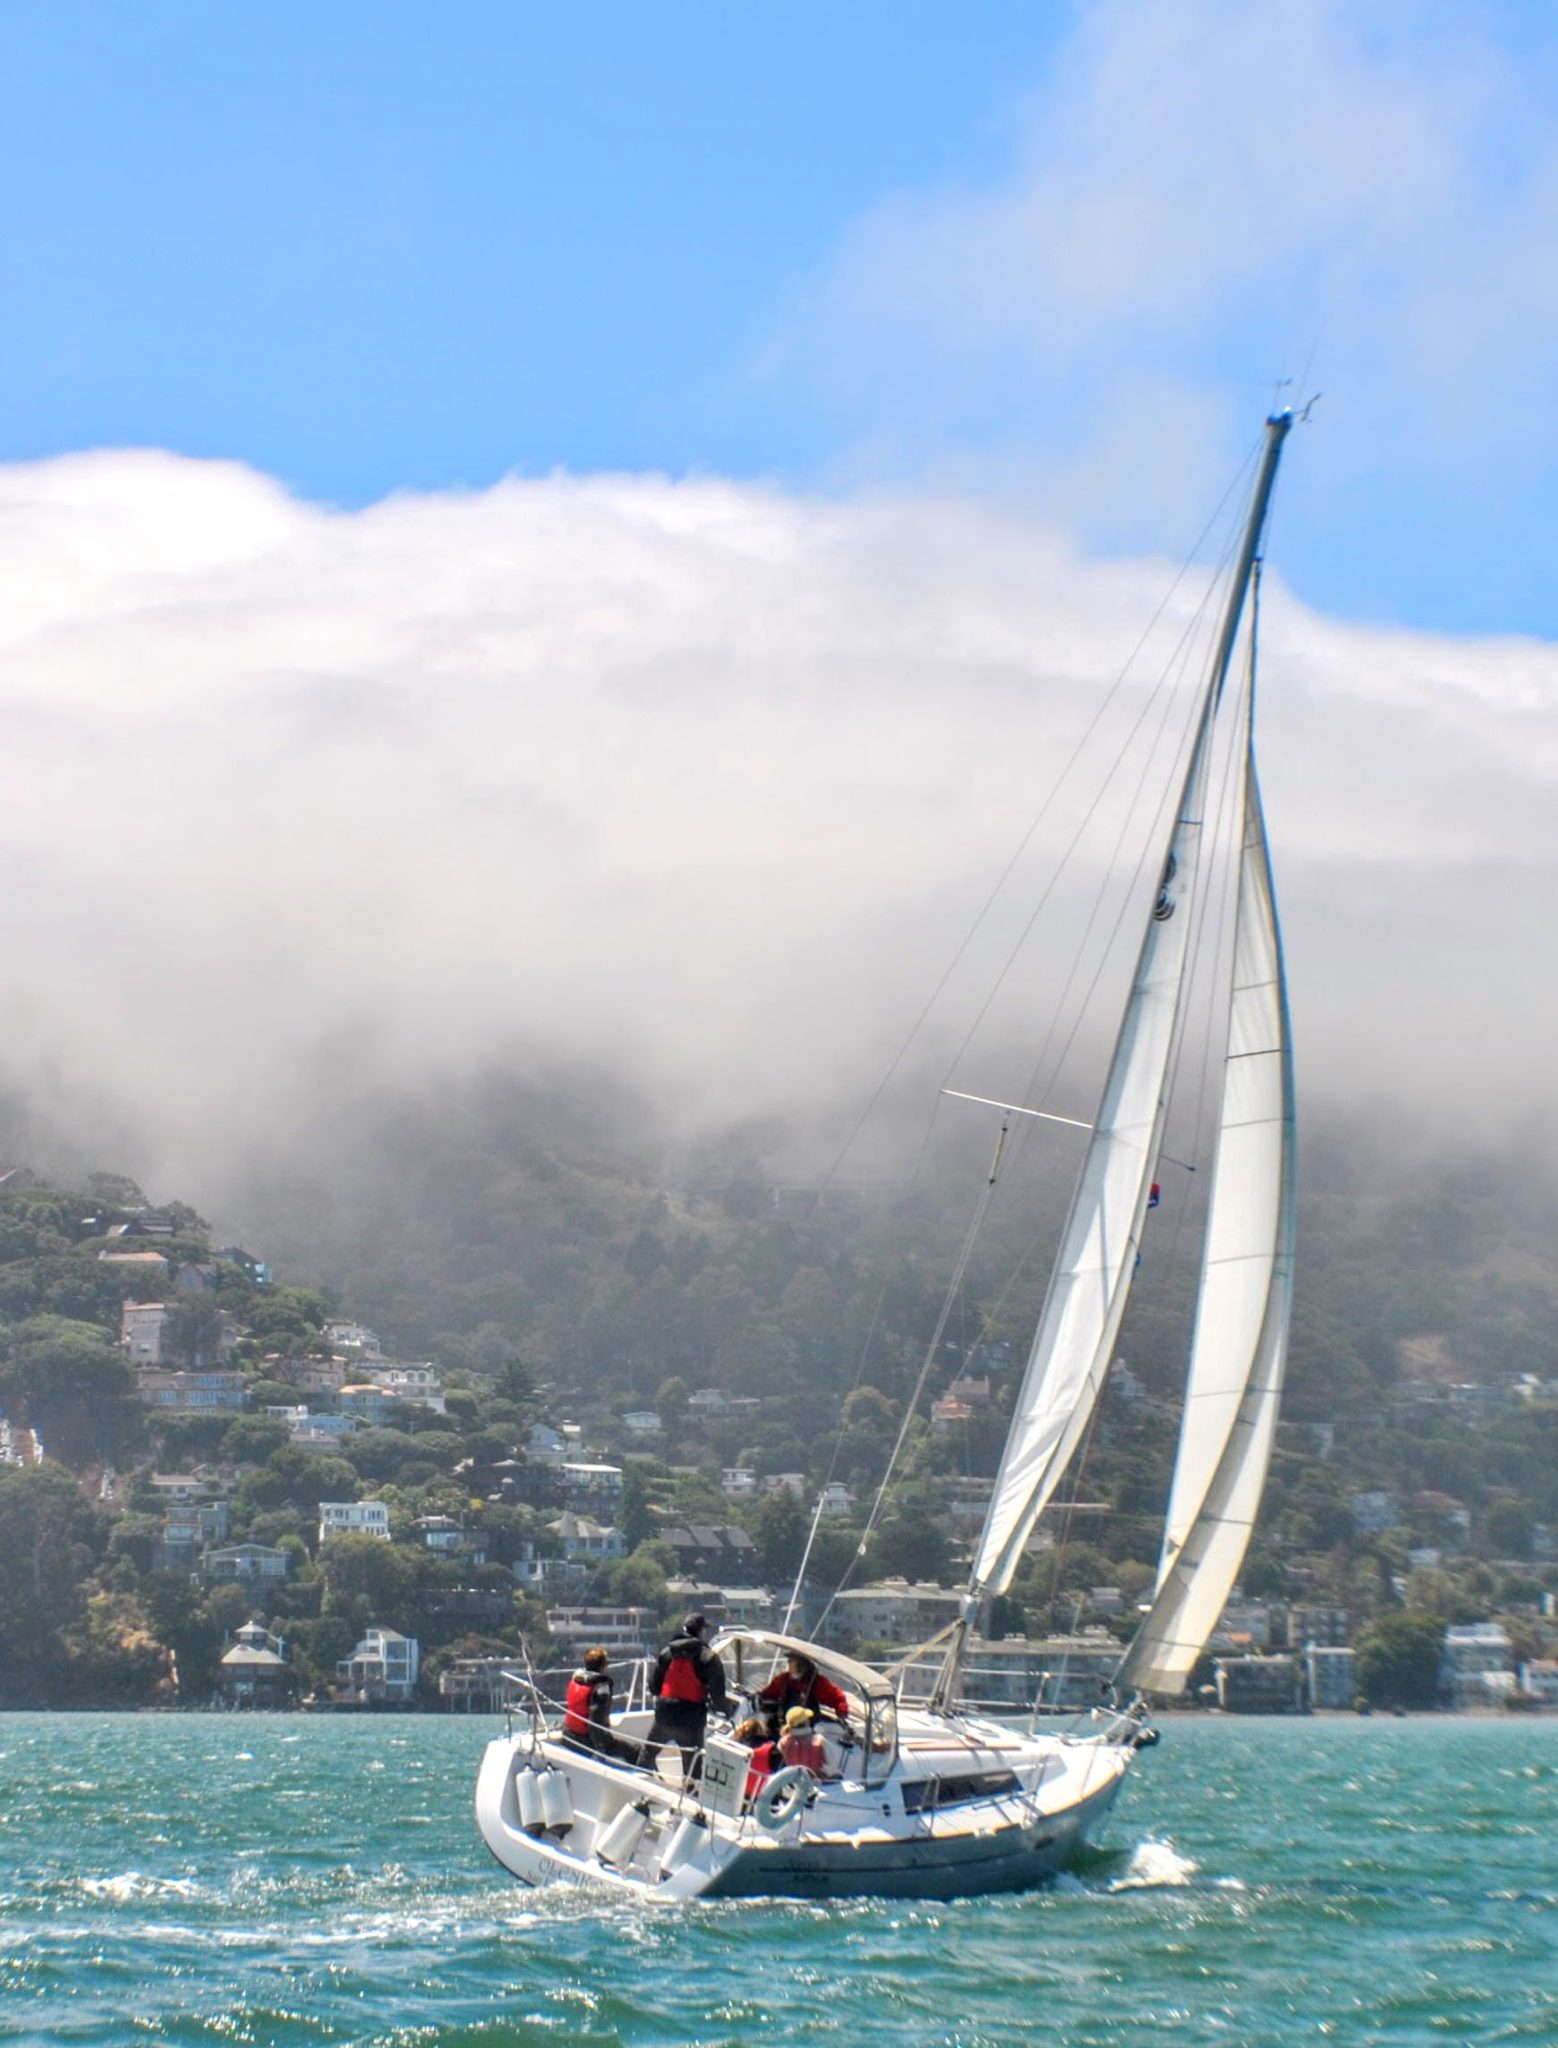 Sailing on San Francisco Bay